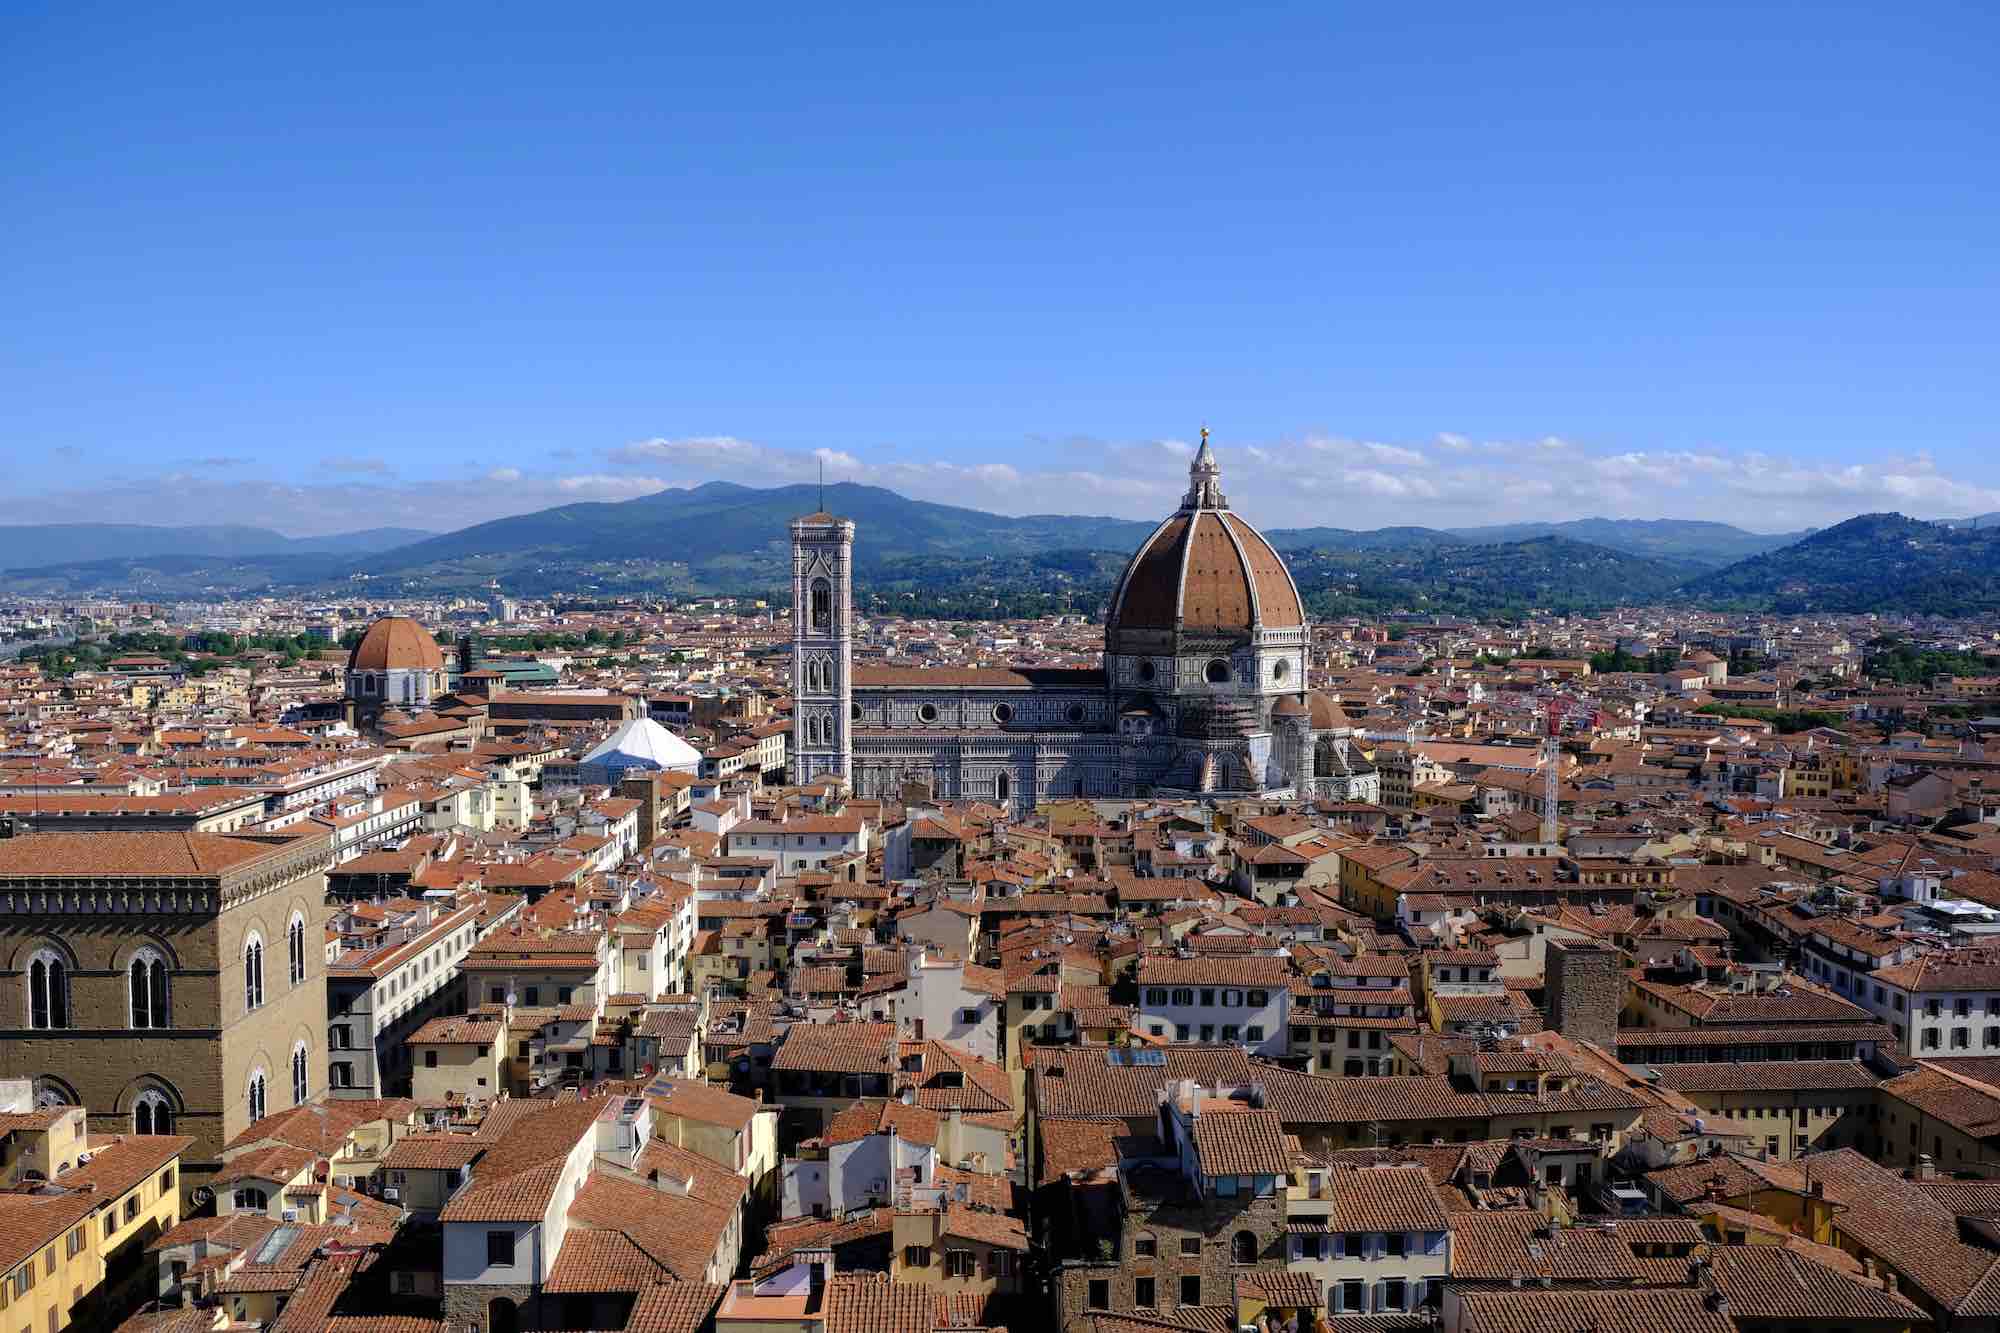 Panorama su Firenze con vista Duomo, Campanile e centro storico in una giornata di sole